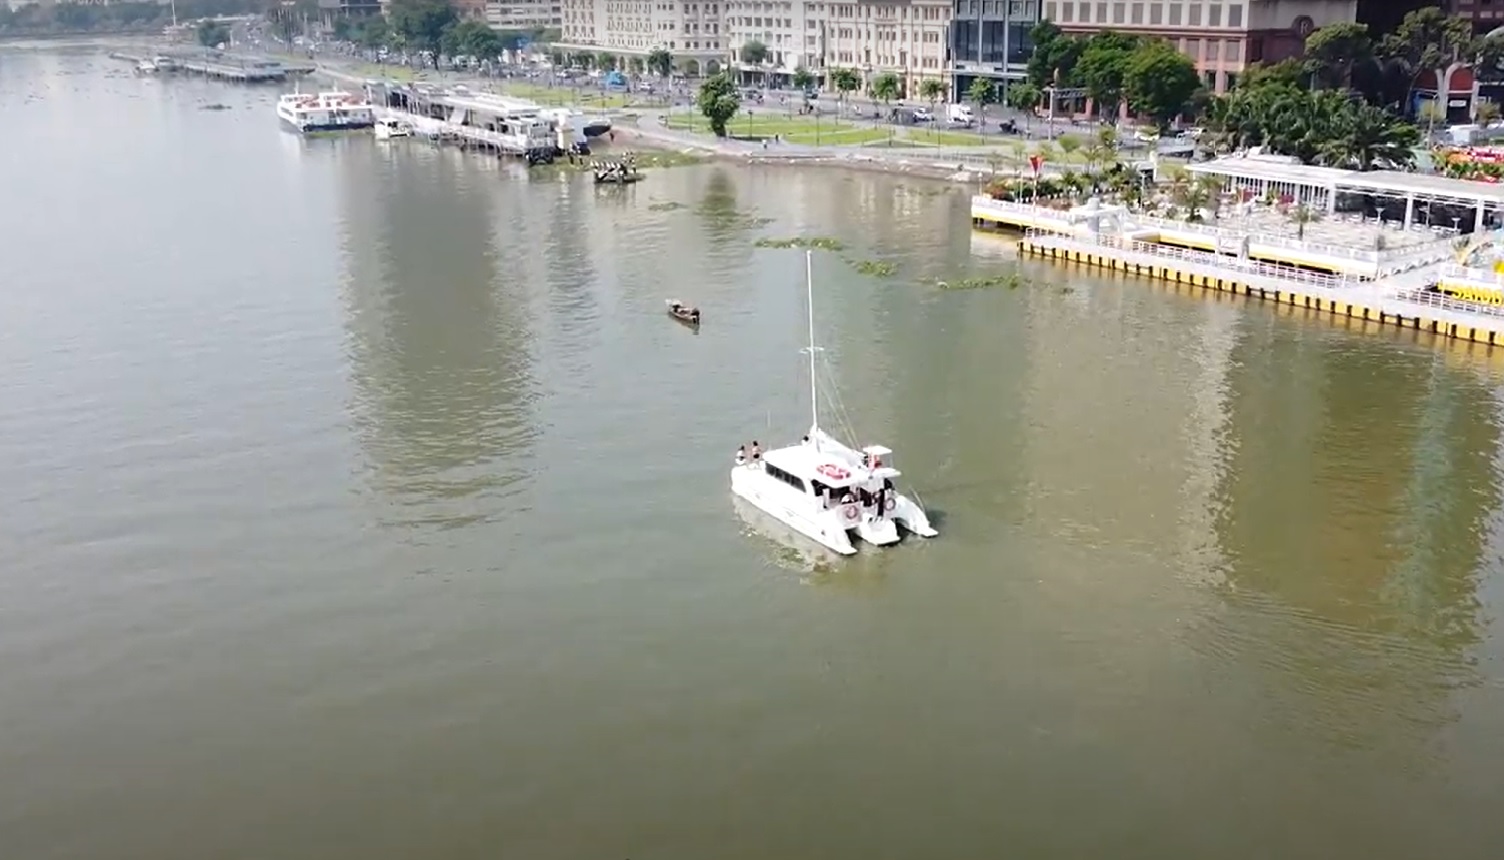 TP Hồ Chí Minh sẽ có du thuyền nghỉ đêm trên sông Sài Gòn - Ảnh 1.